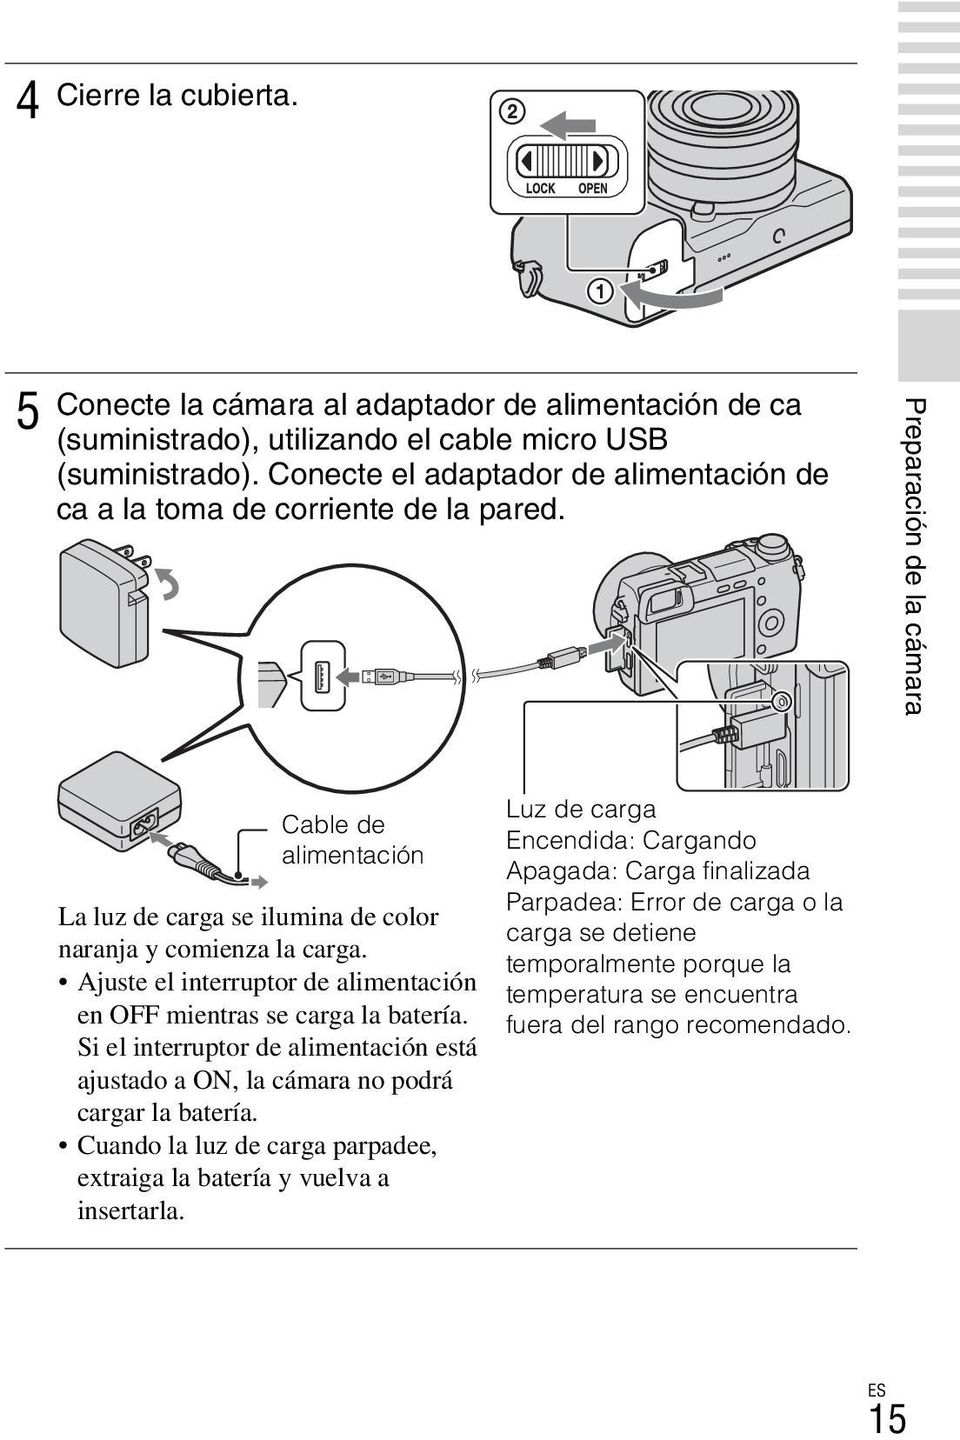 Ajuste el interruptor de alimentación en OFF mientras se carga la batería. Si el interruptor de alimentación está ajustado a ON, la cámara no podrá cargar la batería.